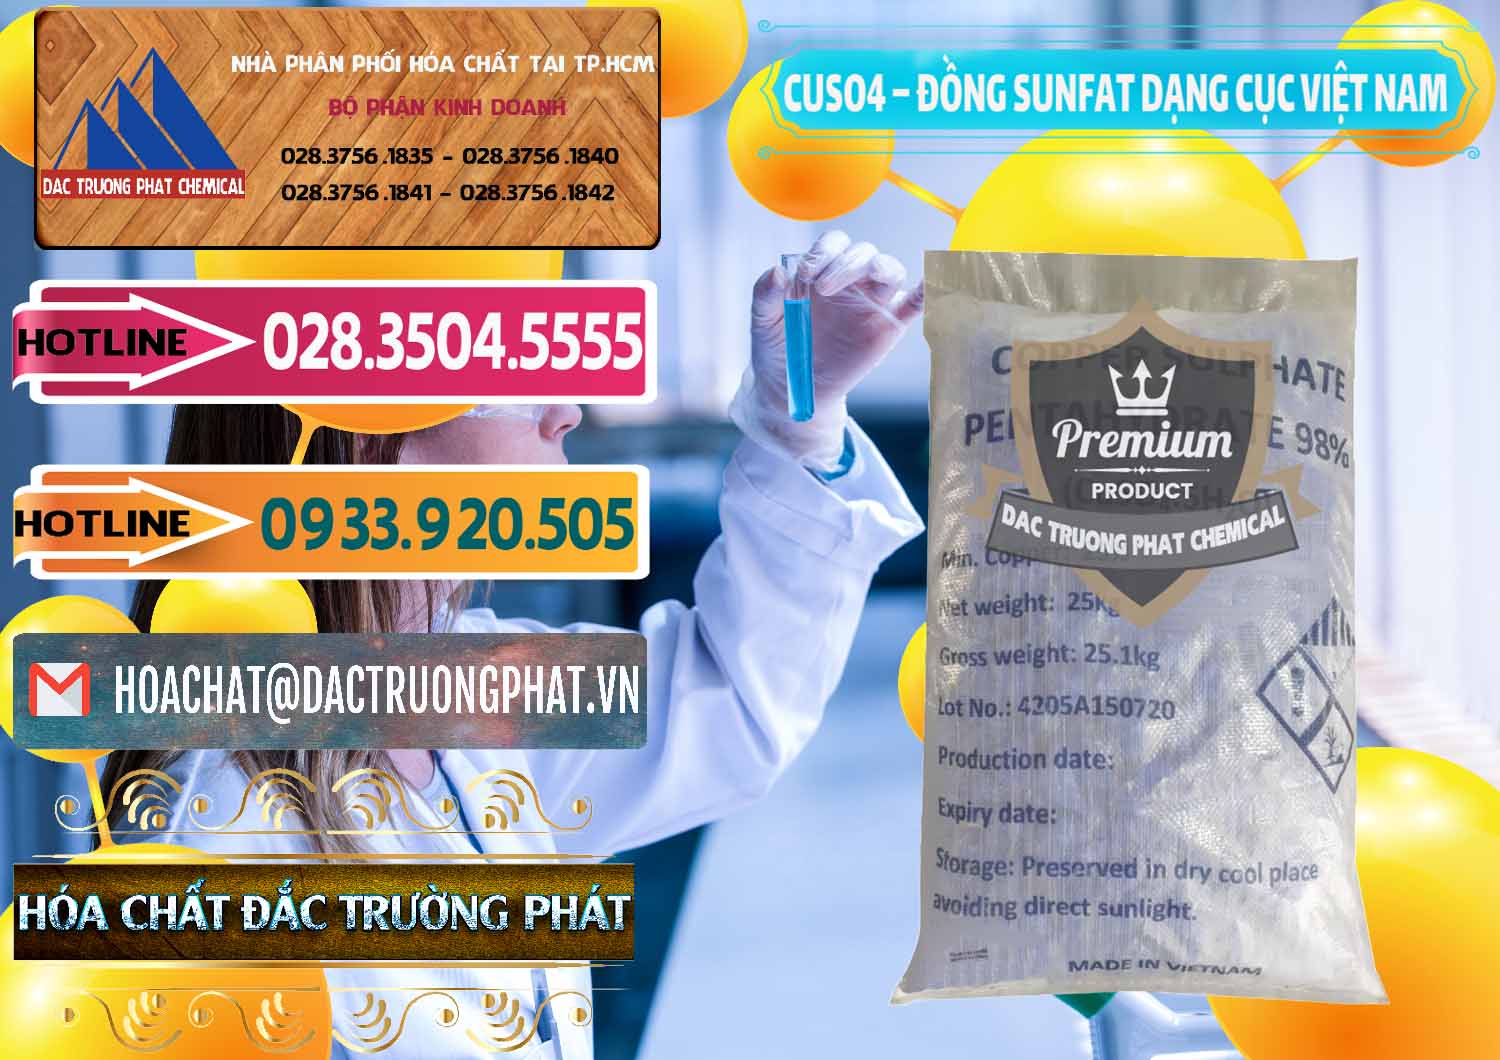 Chuyên phân phối & cung cấp CUSO4 – Đồng Sunfat Dạng Cục Việt Nam - 0303 - Đơn vị chuyên bán và phân phối hóa chất tại TP.HCM - dactruongphat.vn